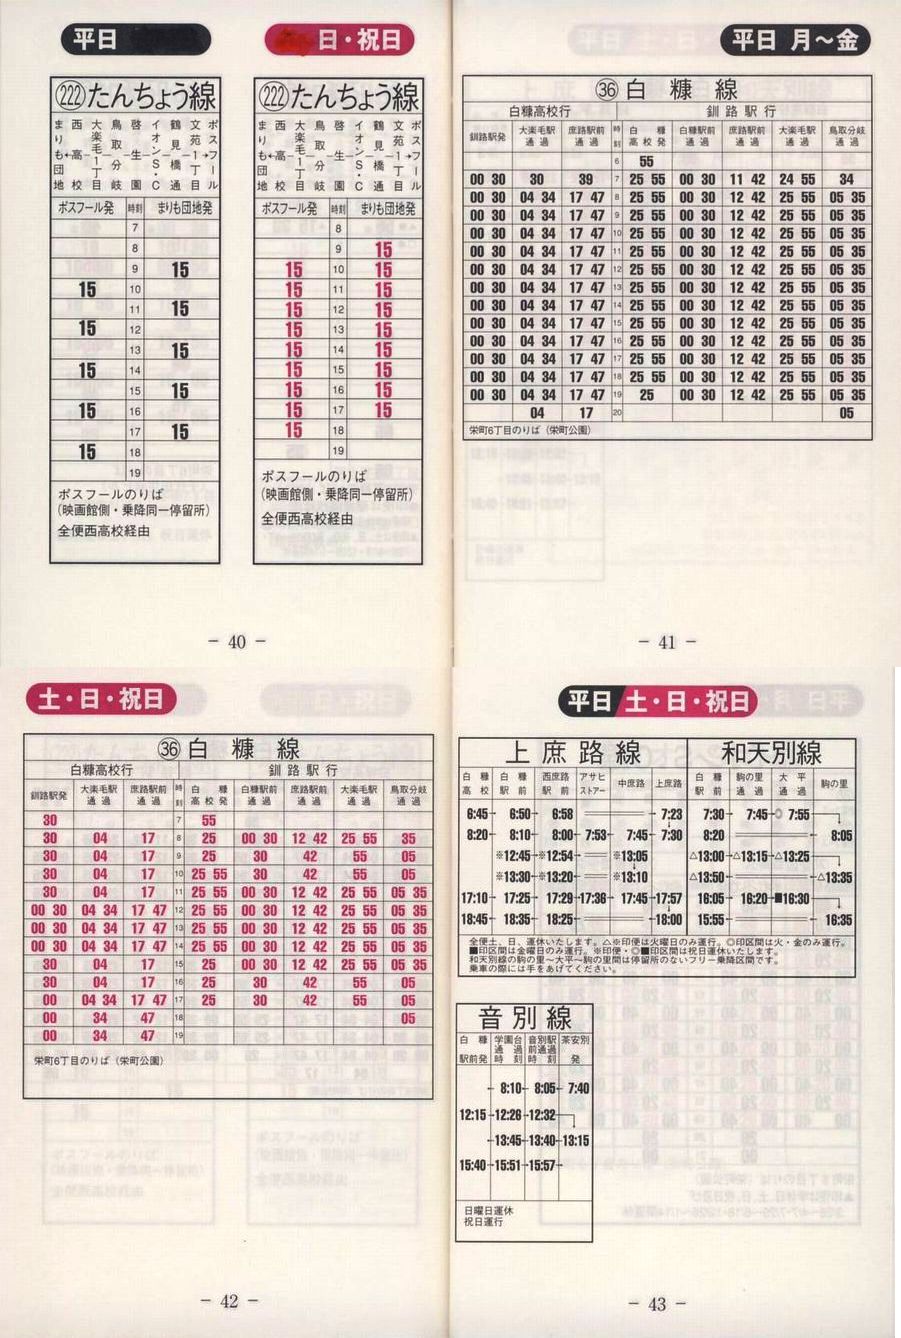 2003-04-22改正_くしろバス_冊子時刻表_40-43